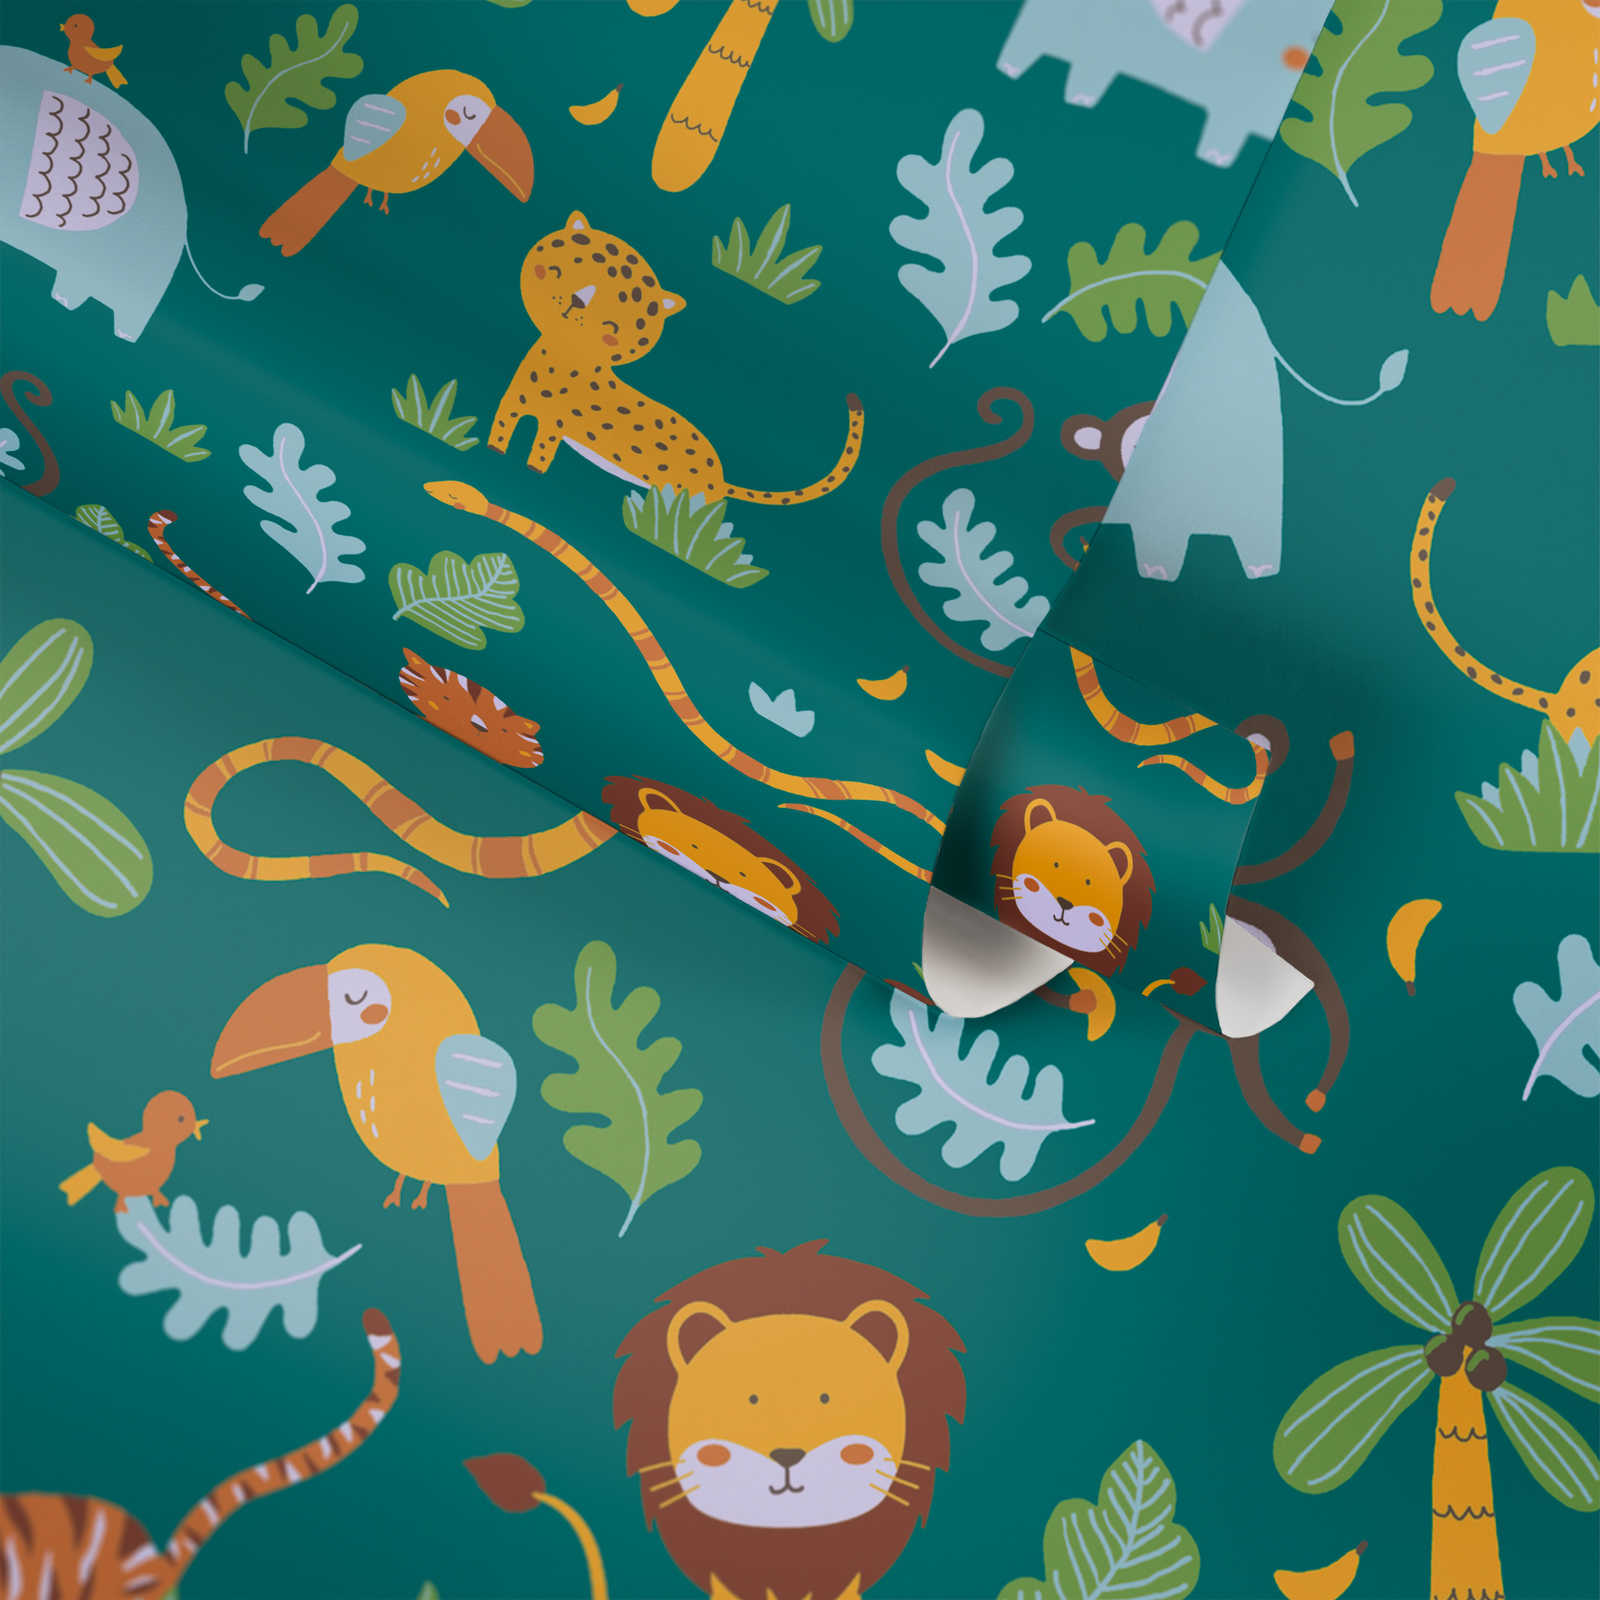             Children wallpaper jungle animals - green, yellow, blue
        